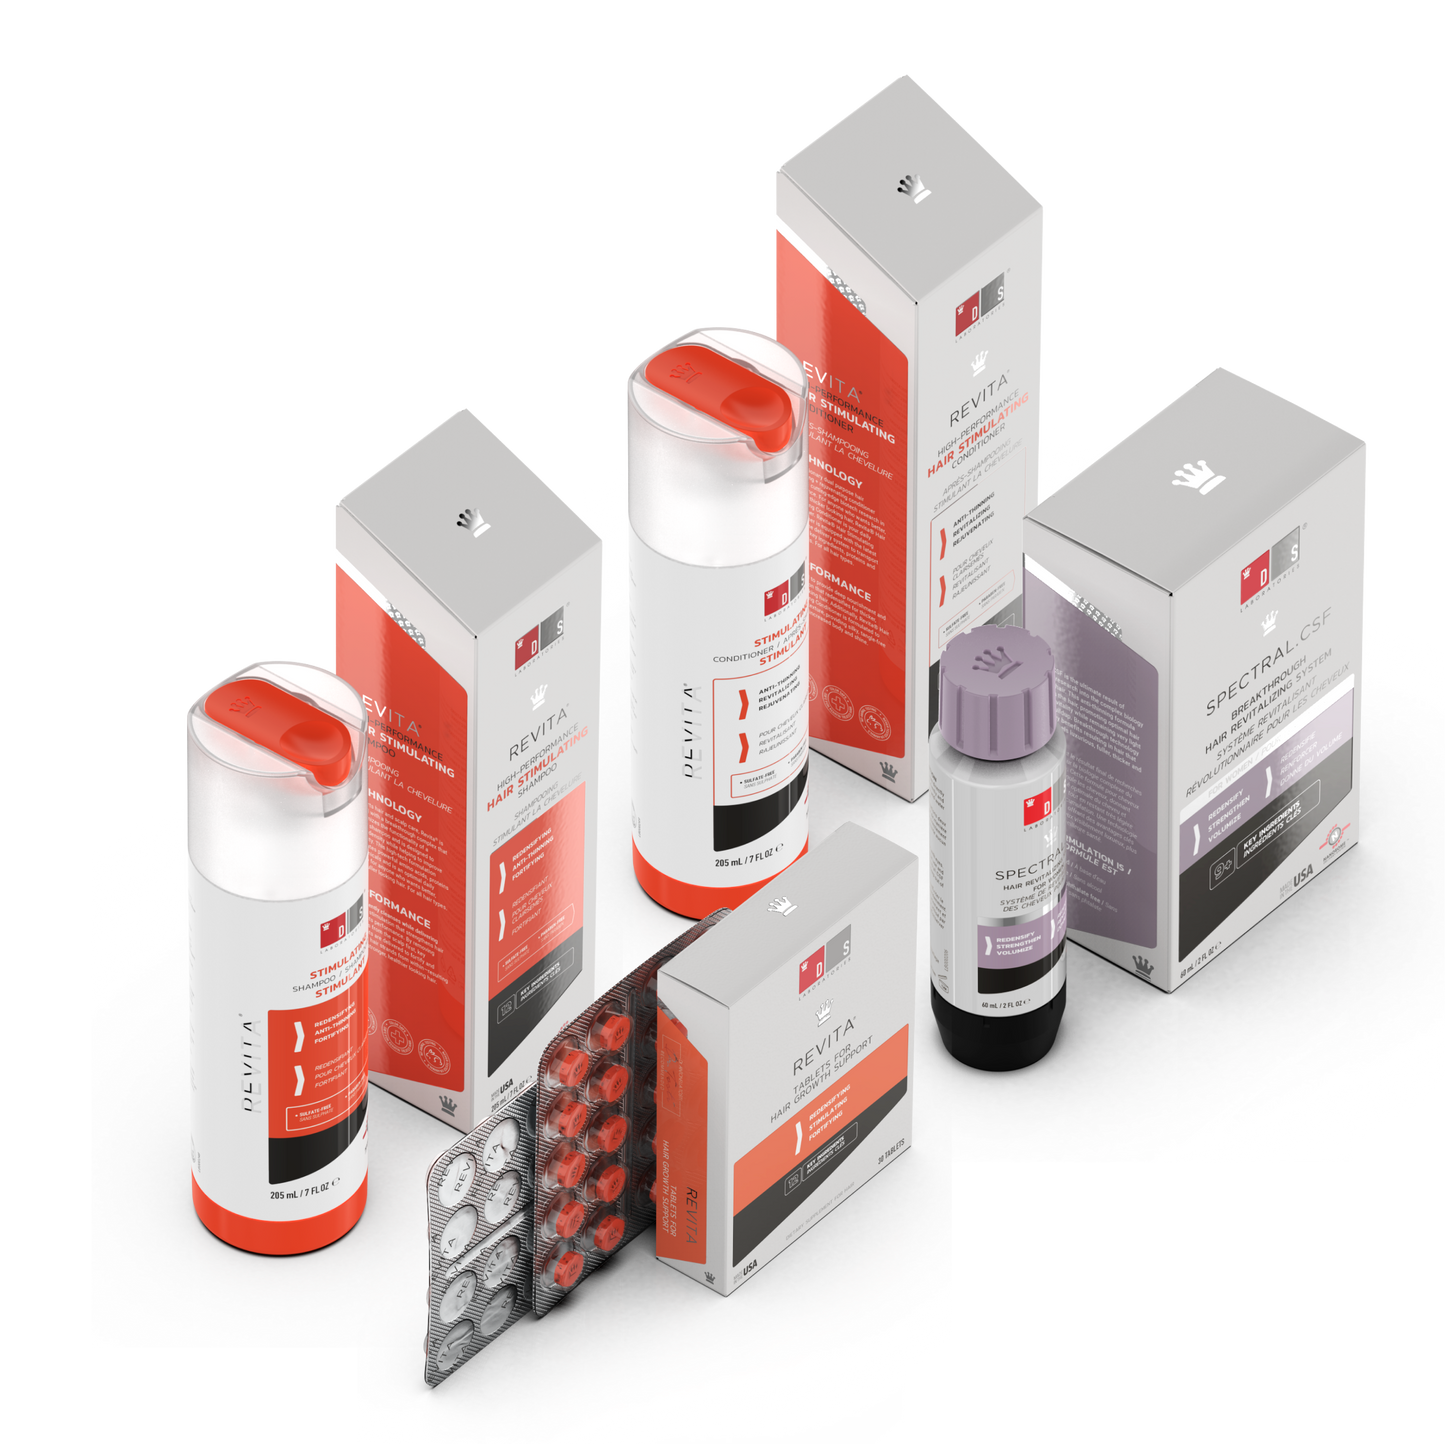 Kit | Revita Shampoo/Acondicionador + Spectral.CSF + Revita Tabletas